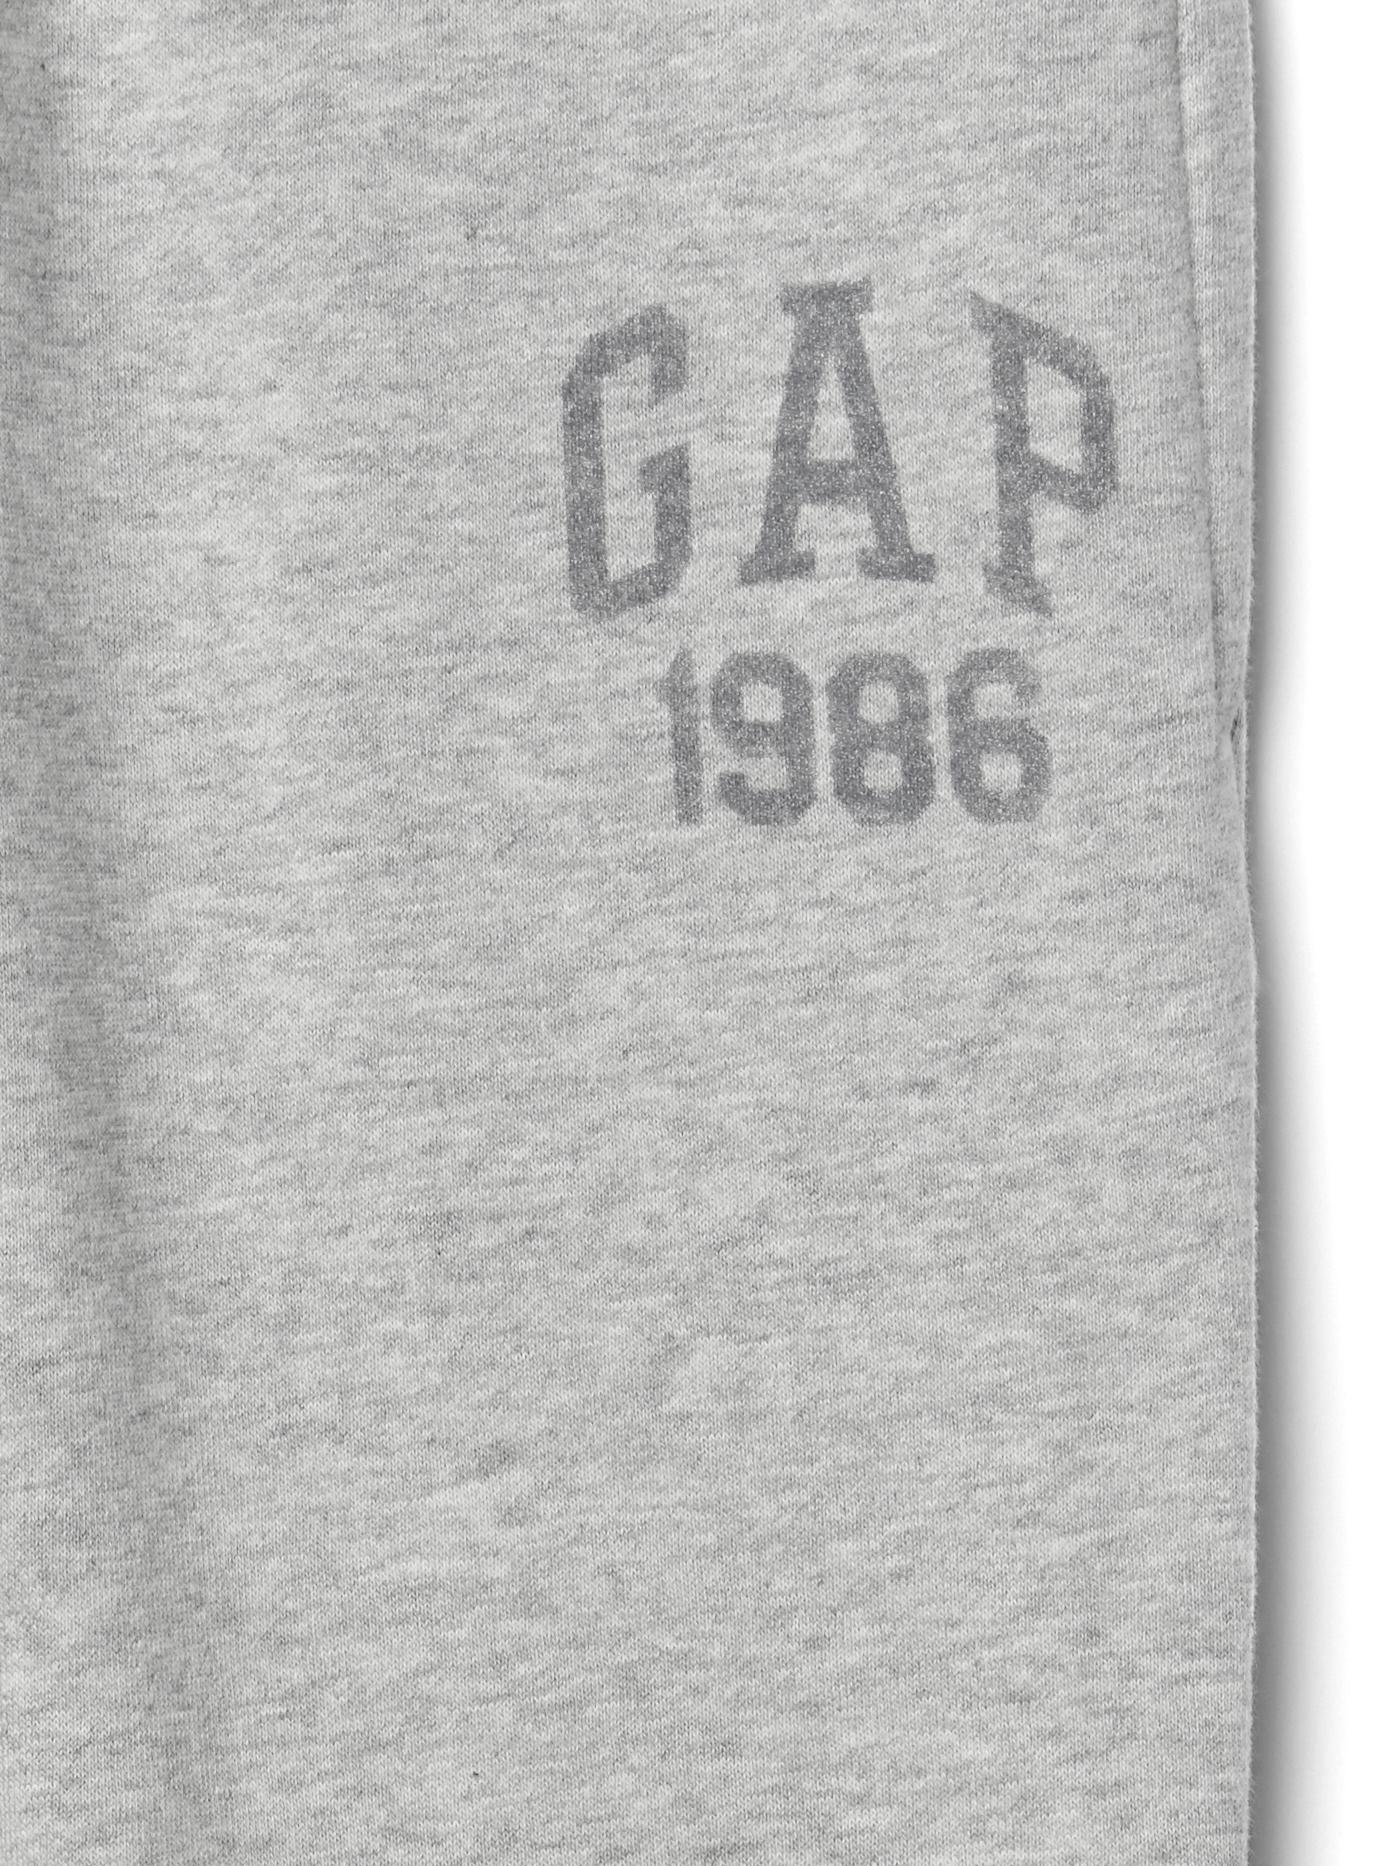 Kids Gap Logo Pants in Fleece